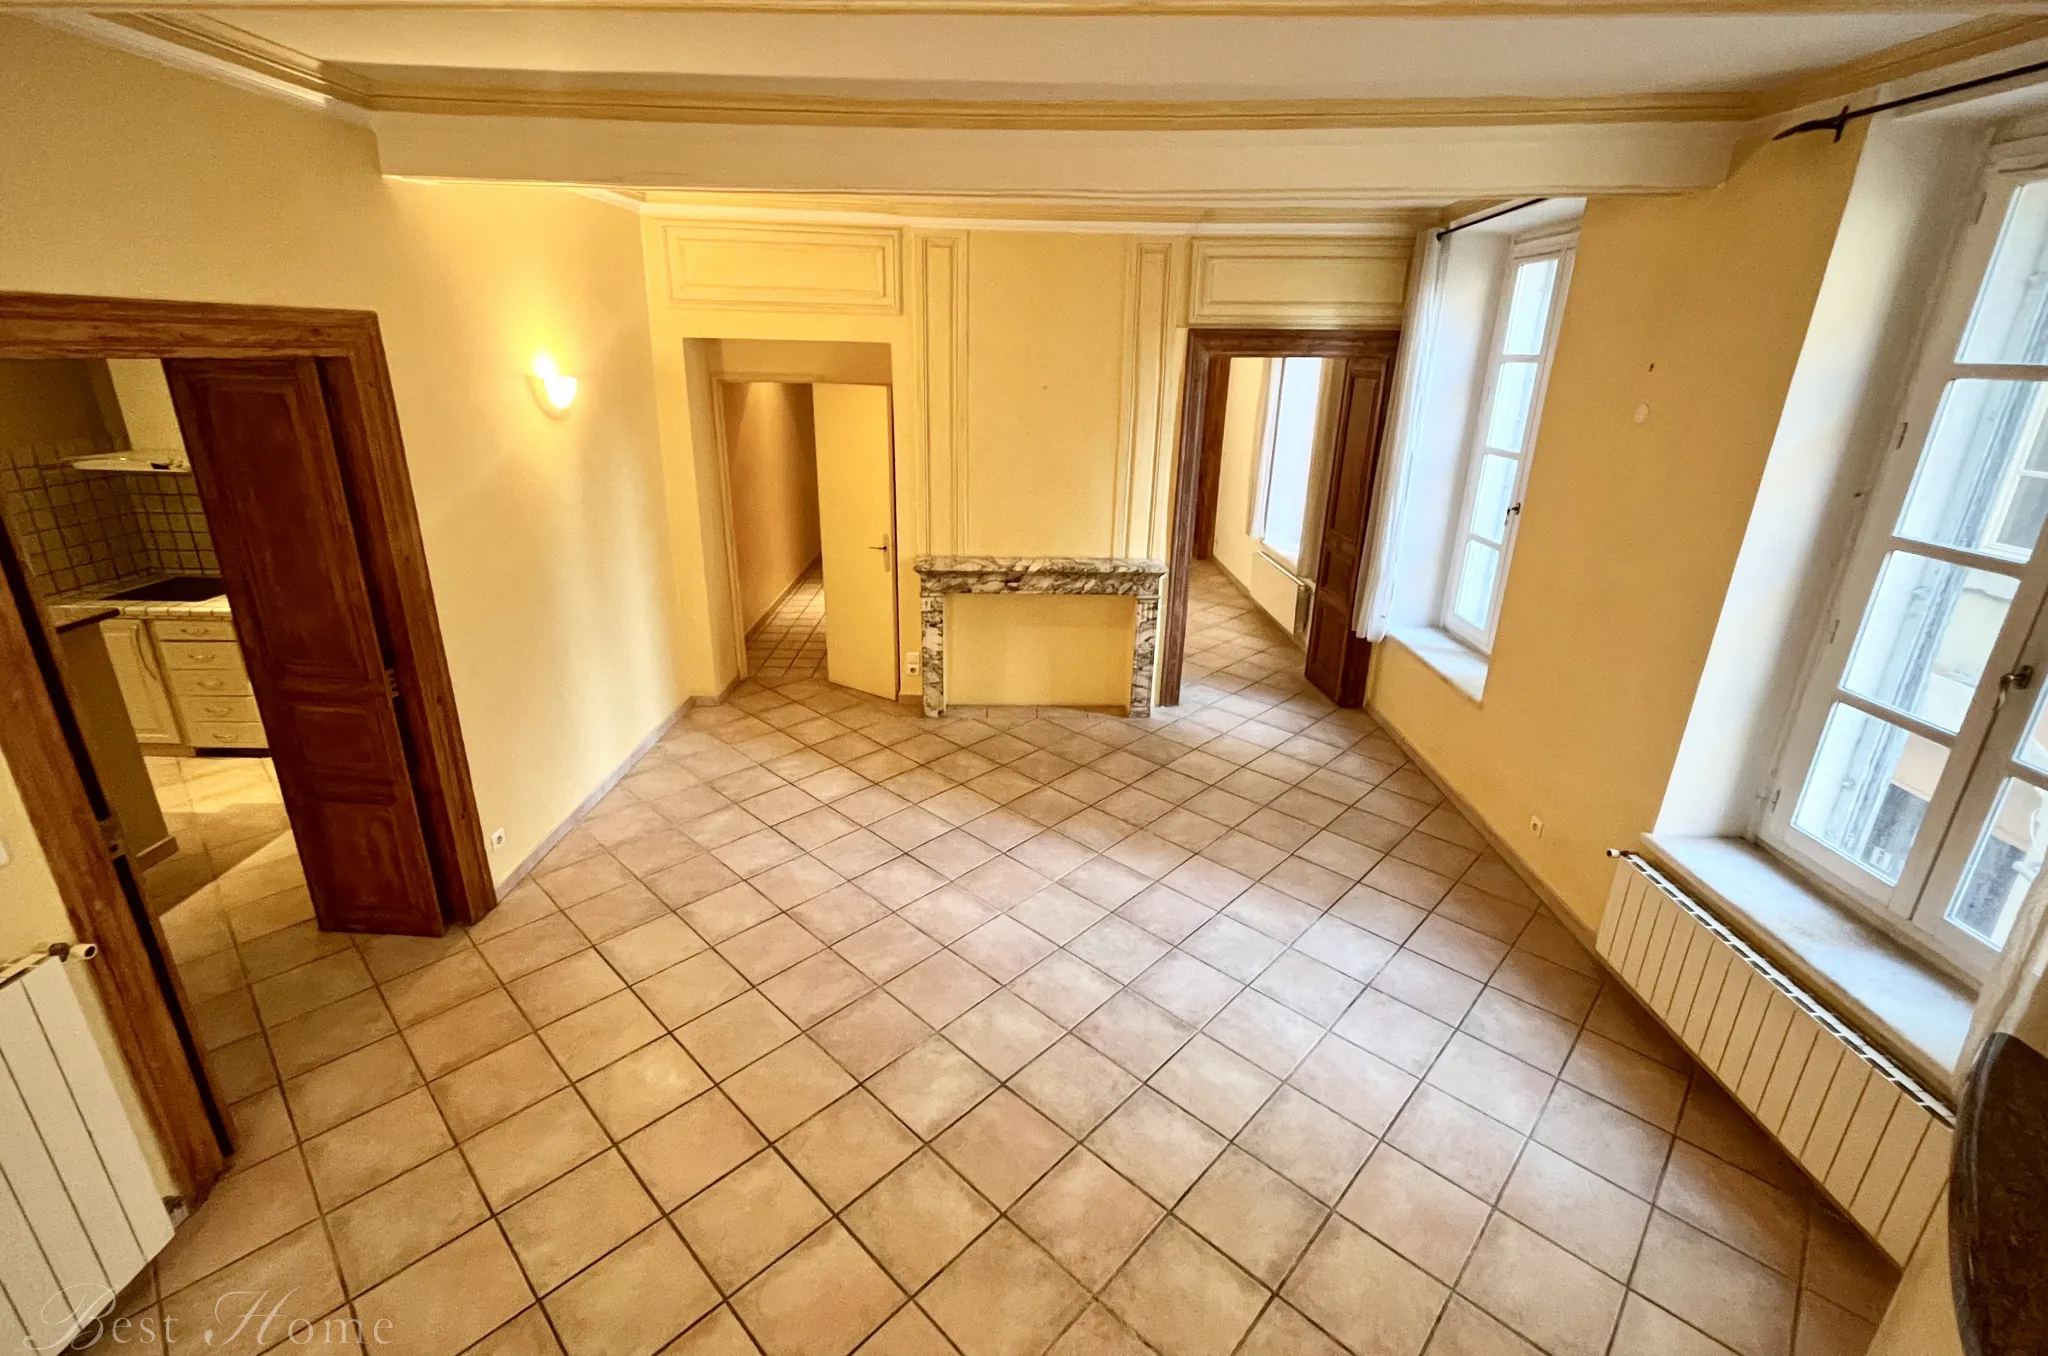 Vente appartement à Nîmes hypercentre avec 4 chambres 